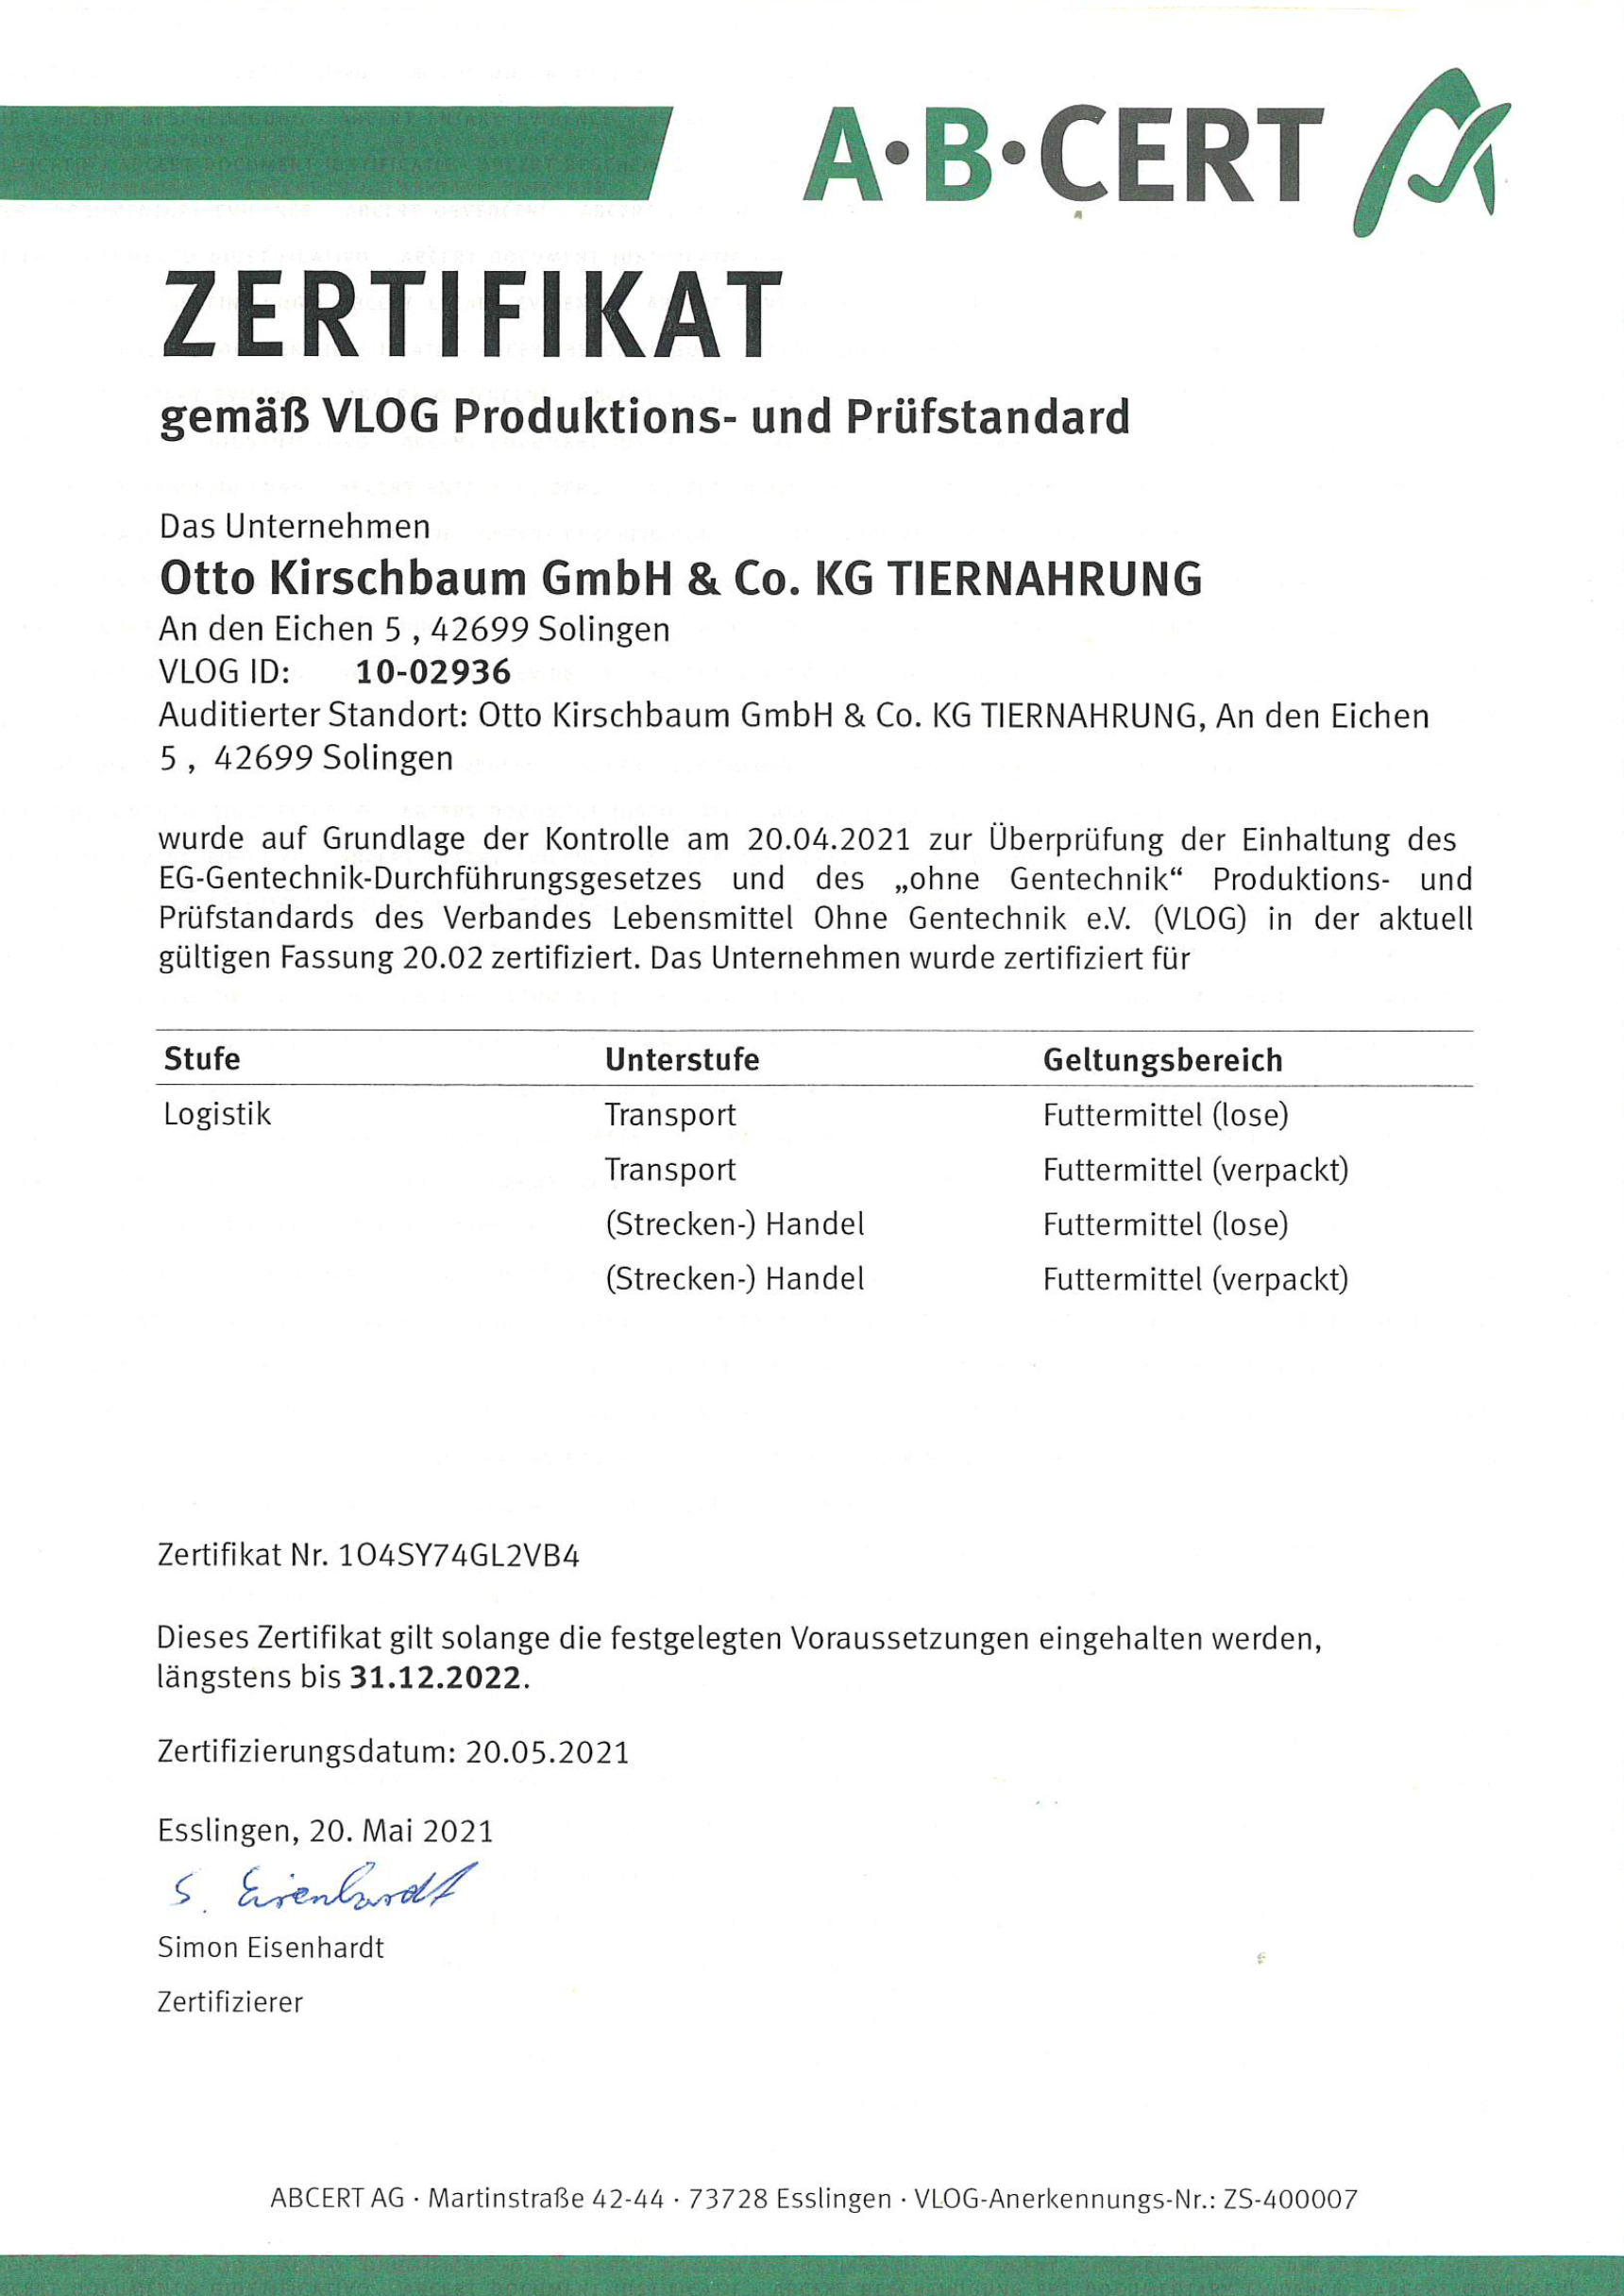 VLOG - Zertifikat bis 31.12.2022